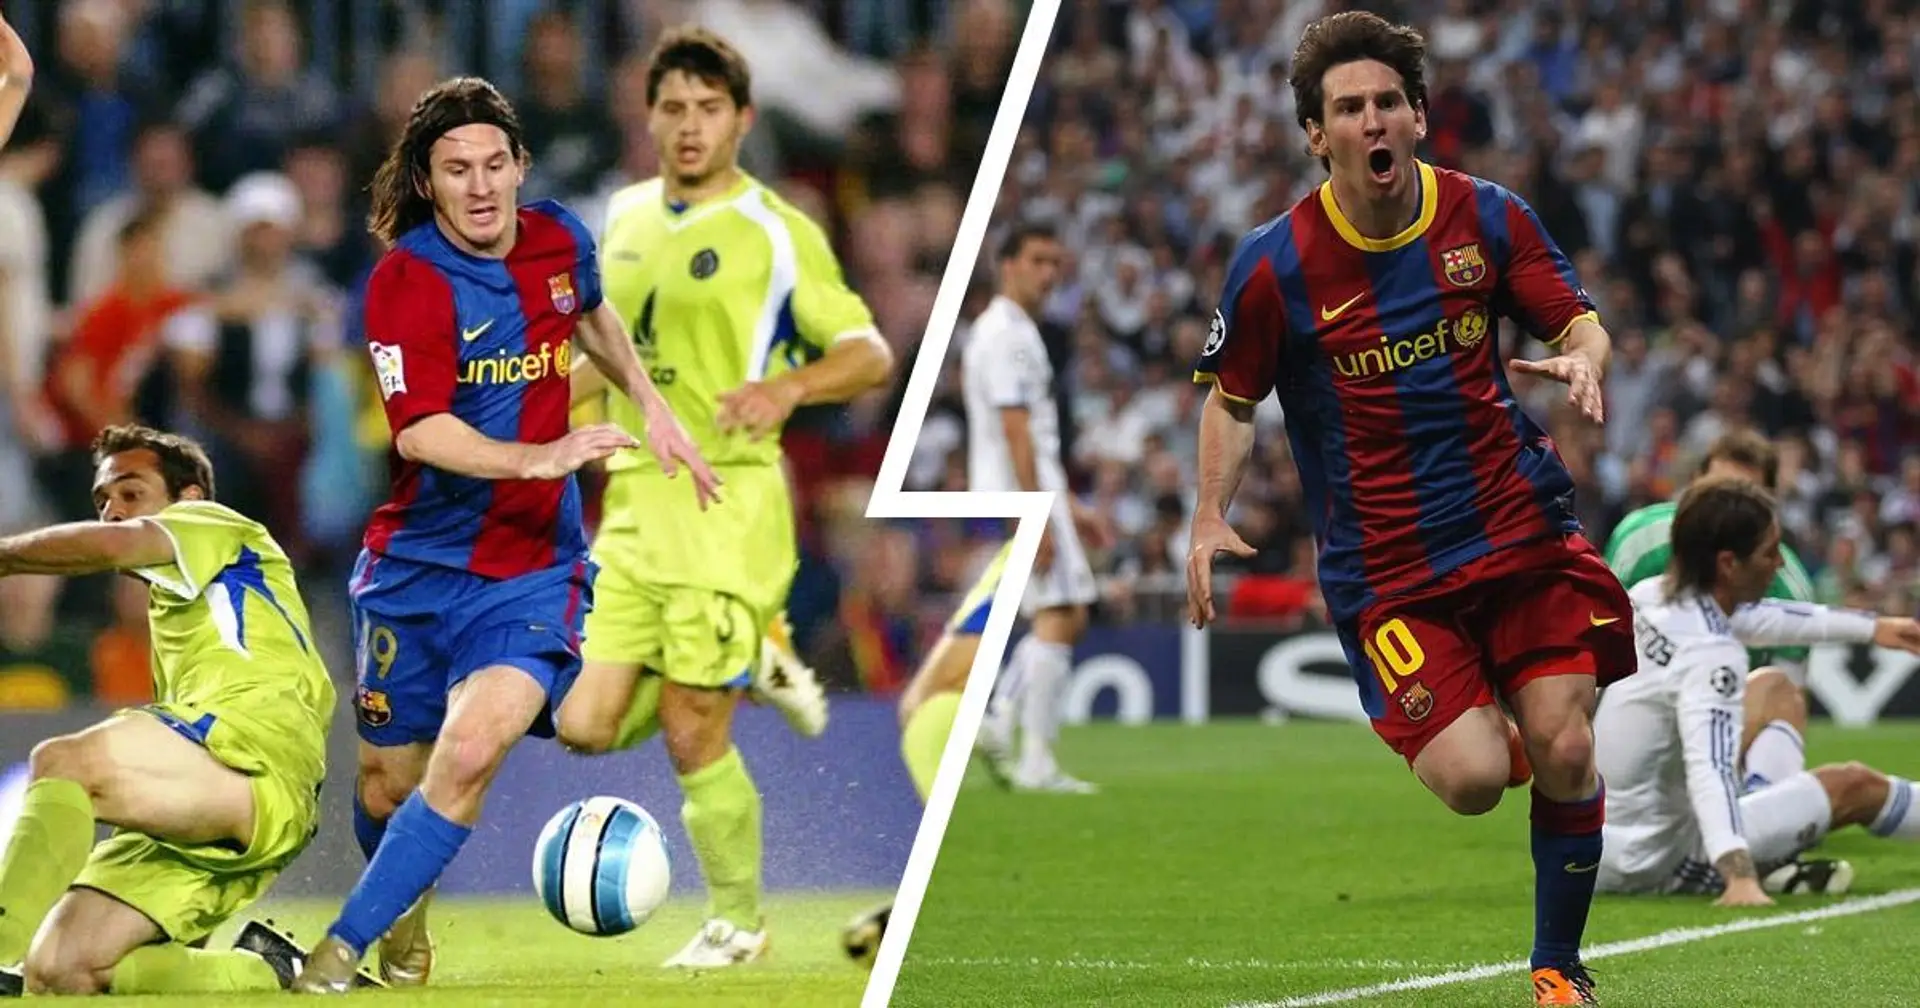 "Voici Messi s'éloignant de 2,3,4 ... merveilleux! magnifique! merveilleux !!!": Le top 5 des commentaires préférés des fans sur Leo Messi